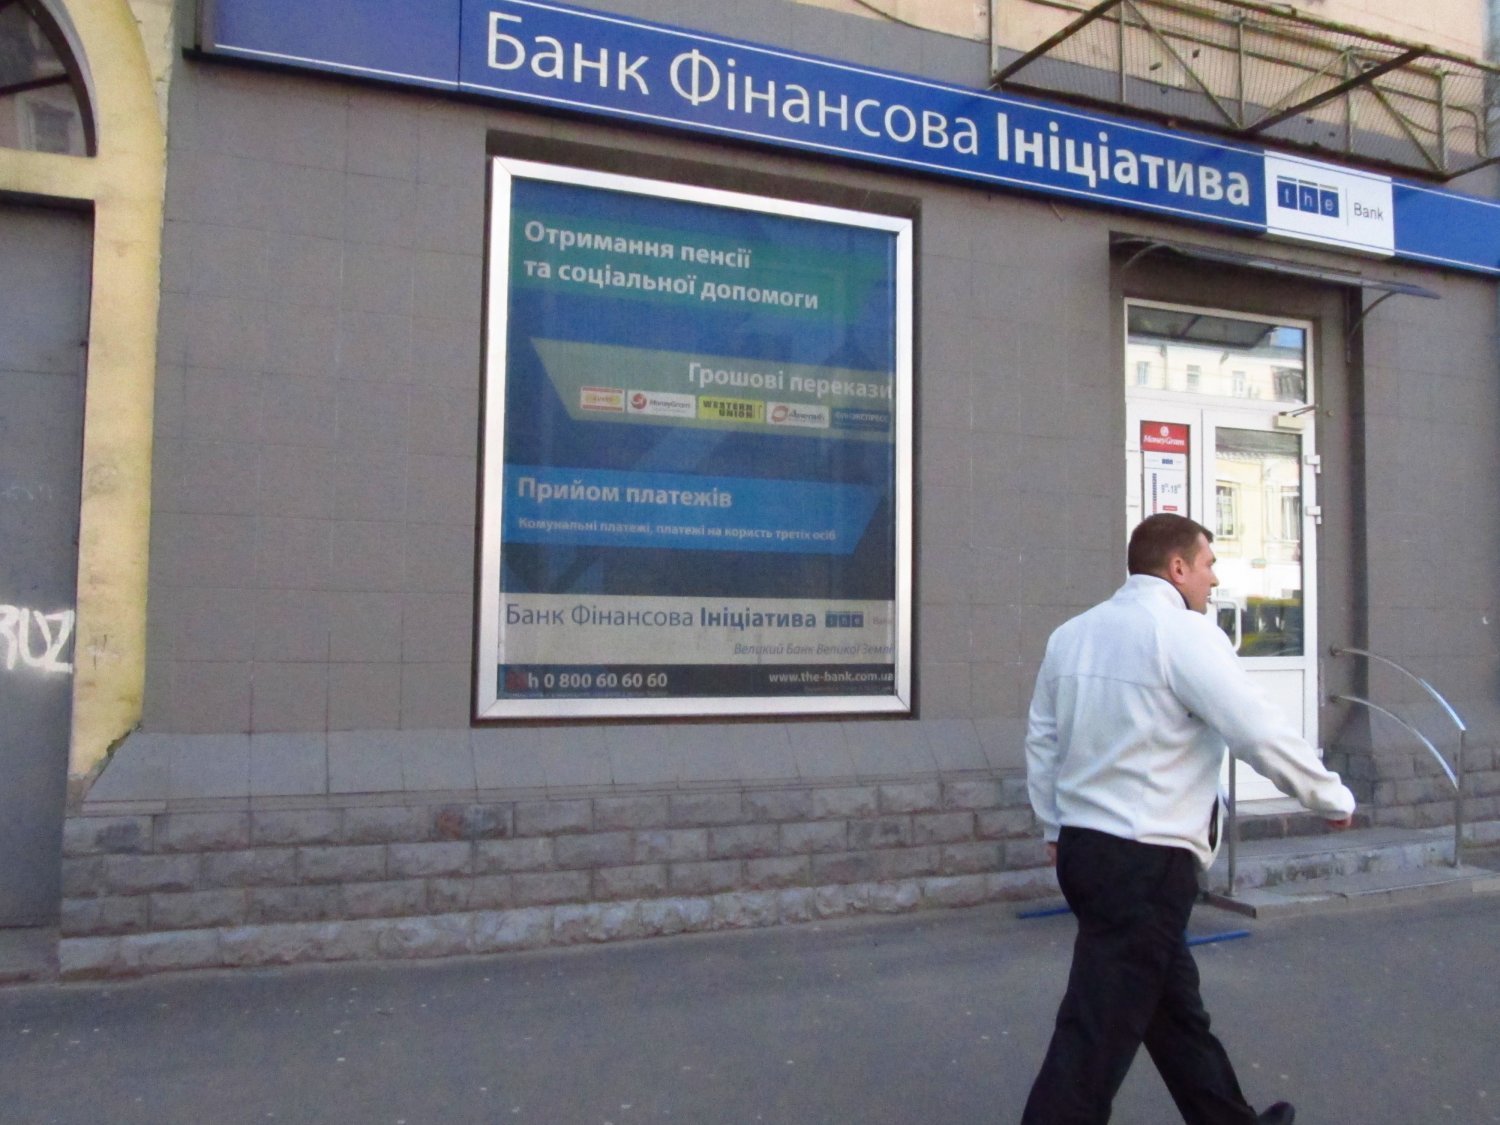 Какой банк в украине. Банки Украины. Финансовая инициатива банк. Банк Украины. Финансовые компании Украины ликвидируют.